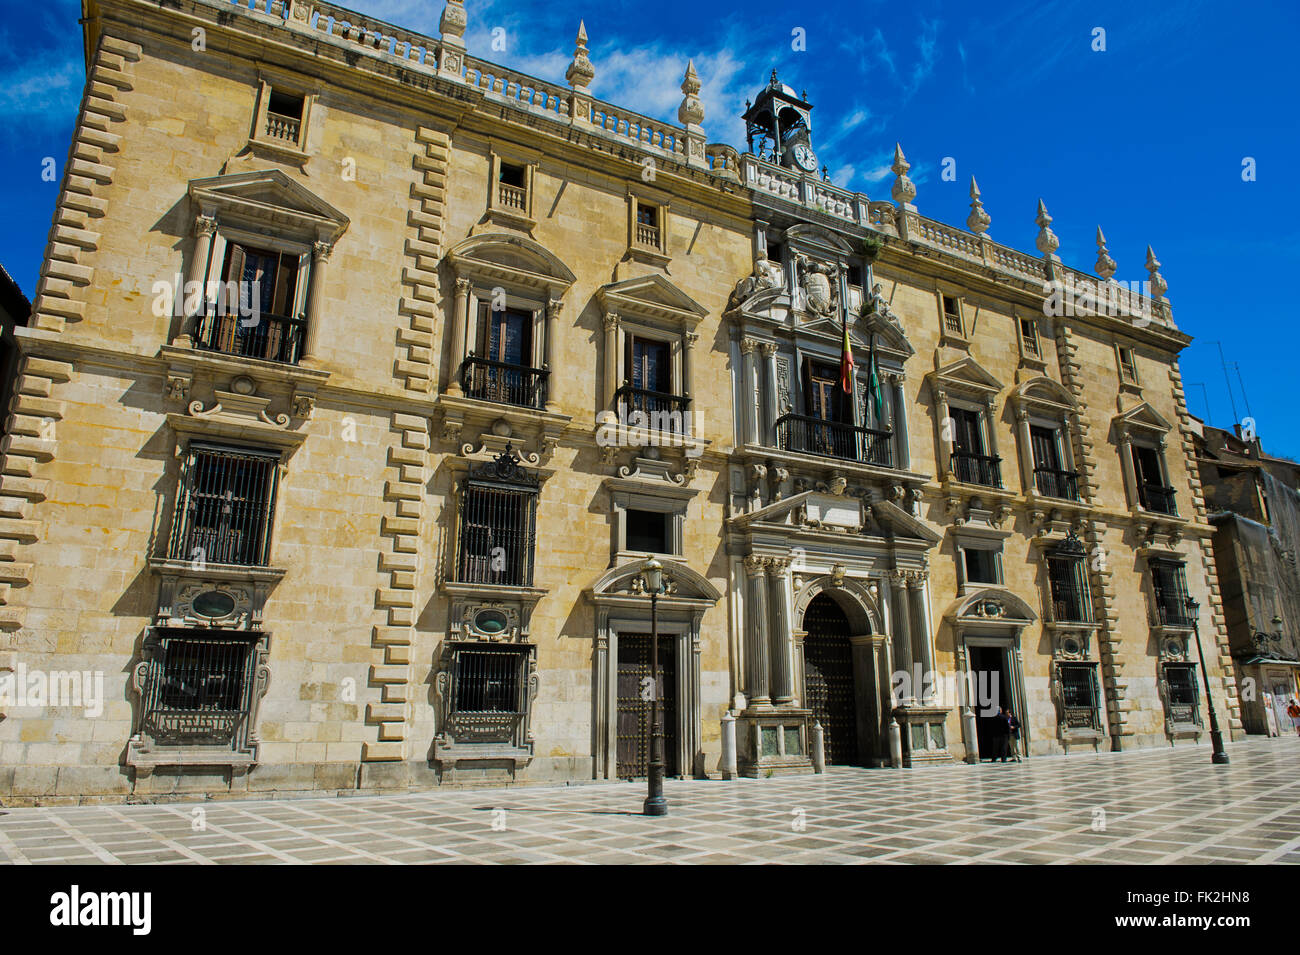 Building of the Royal Chancery, Palacio de la Chancilleria, at the New Square, Plaza nueva, Granada, Spain Stock Photo